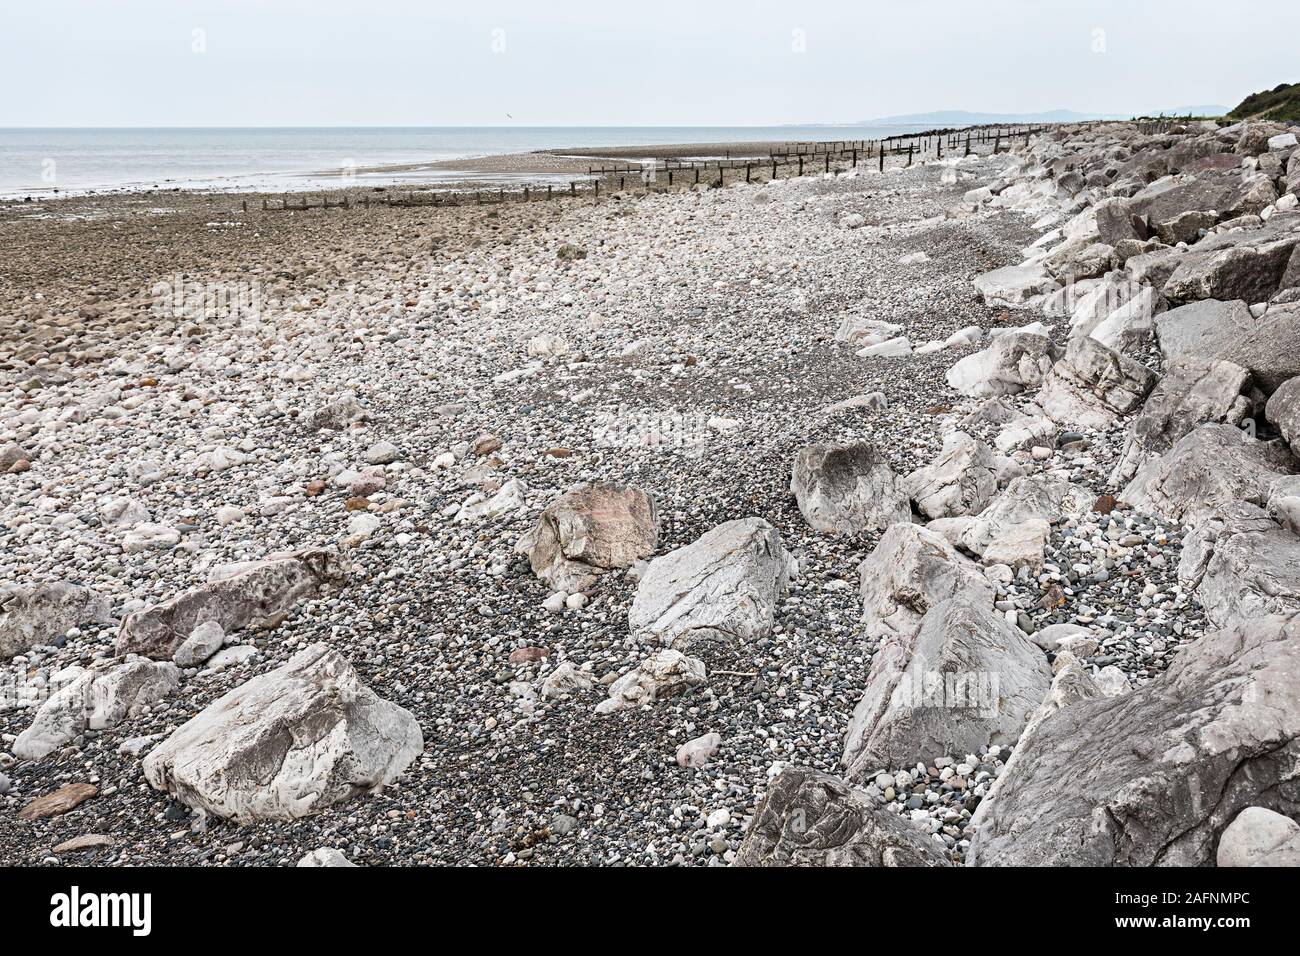 La plage pavée et pierres utilisées pour la protection contre l'érosion côtière, Llanddulas, Conwy, Pays de Galles, Royaume-Uni Banque D'Images